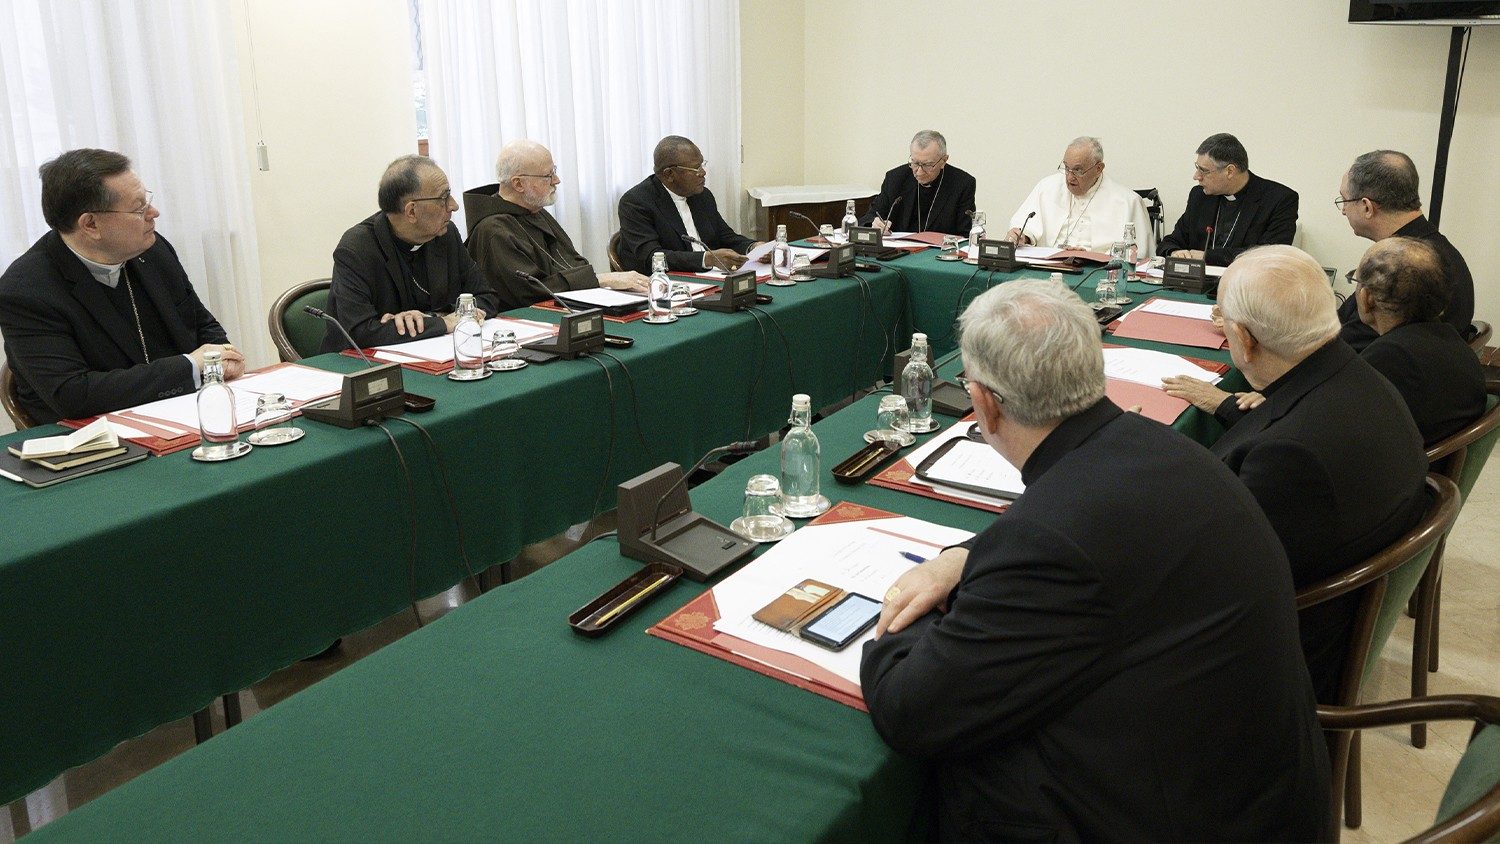 สภาพระคาร์ดินัลเริ่มการประชุมเดือนเมษายนที่นครรัฐวาติกัน (Council of Cardinals commences April meetings in the Vatican)